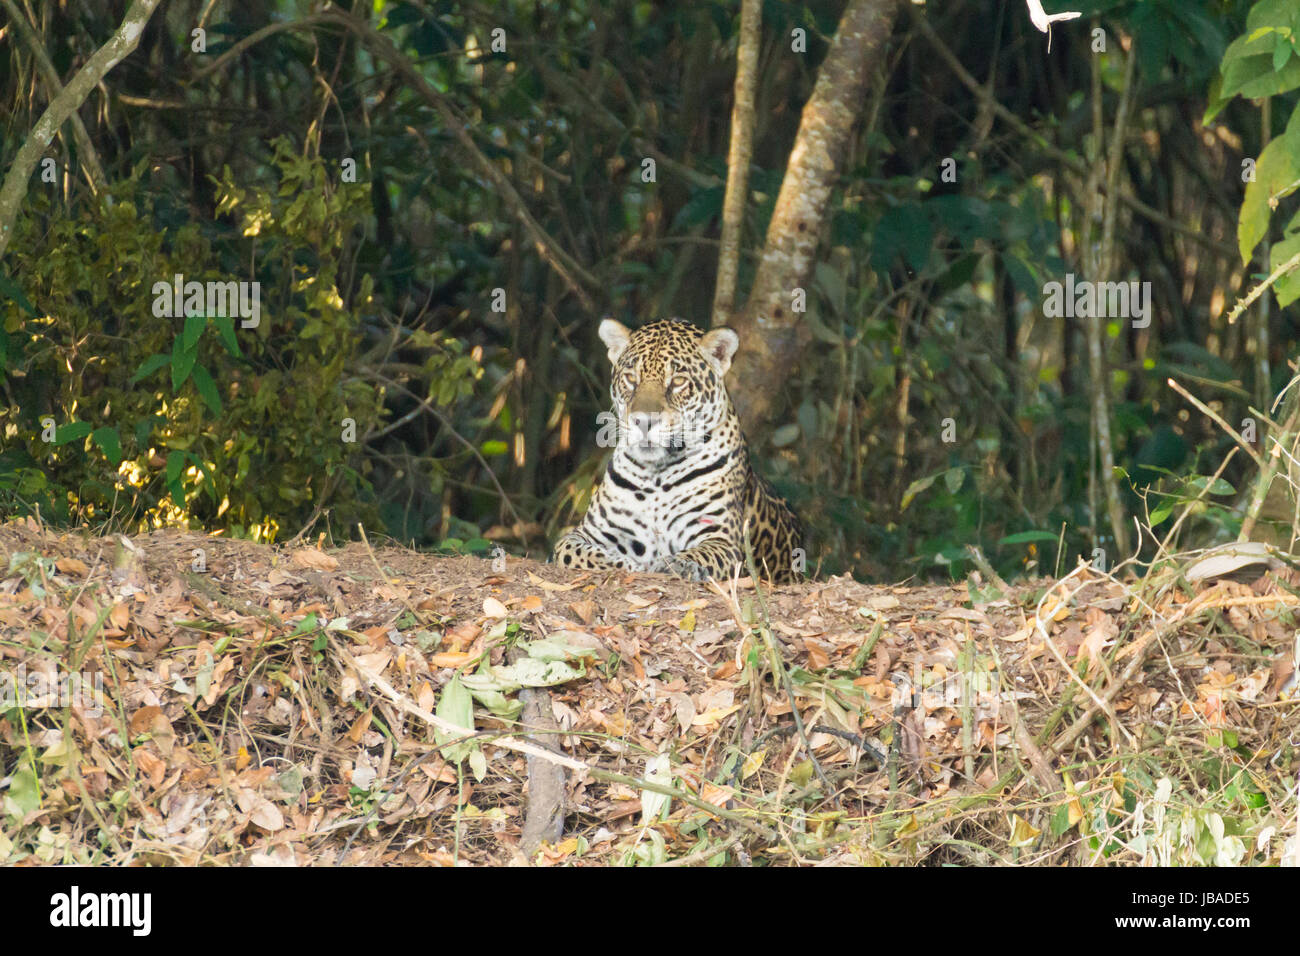 Jaguar am Ufer vom Pantanal, Brasilien. Wilde brasilianische Katze. Natur und Tierwelt. Panthera onca Stockfoto